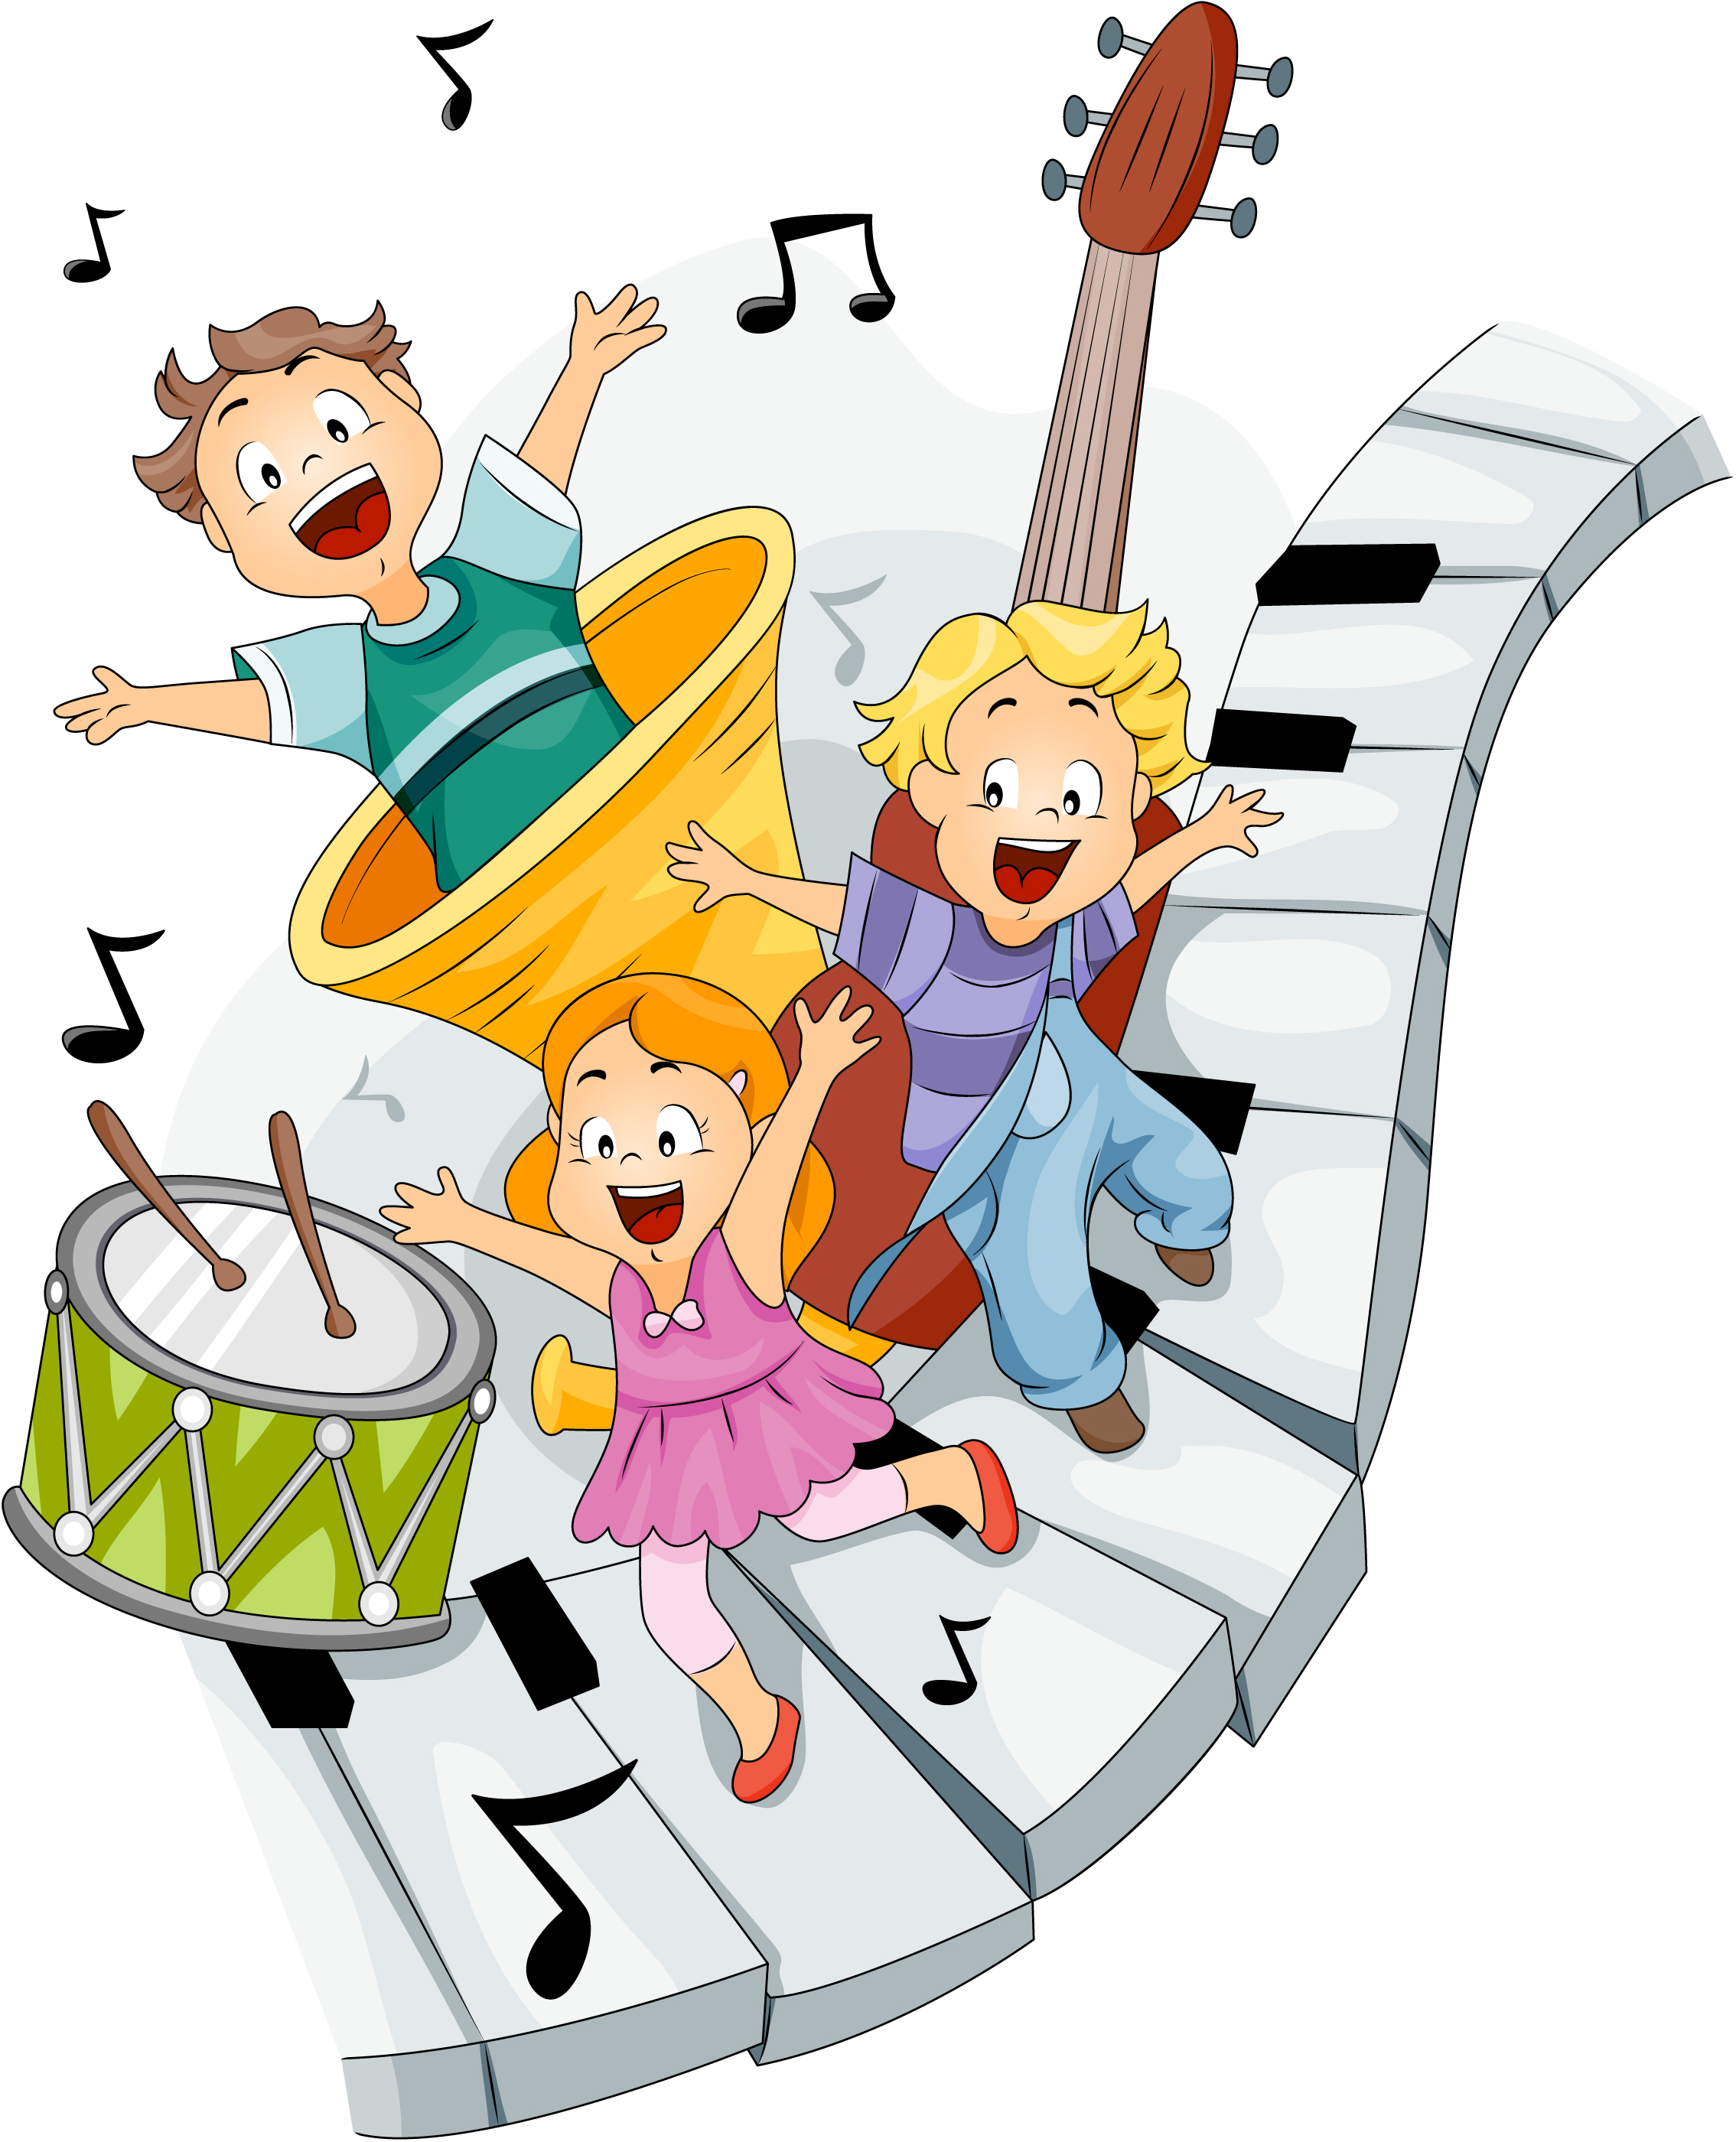 Молодежная веселая музыка. Музыкальные картинки для детей. Музыкальные инструменты для детей. Веселые музыканты. Картинки на музыкальную тему.